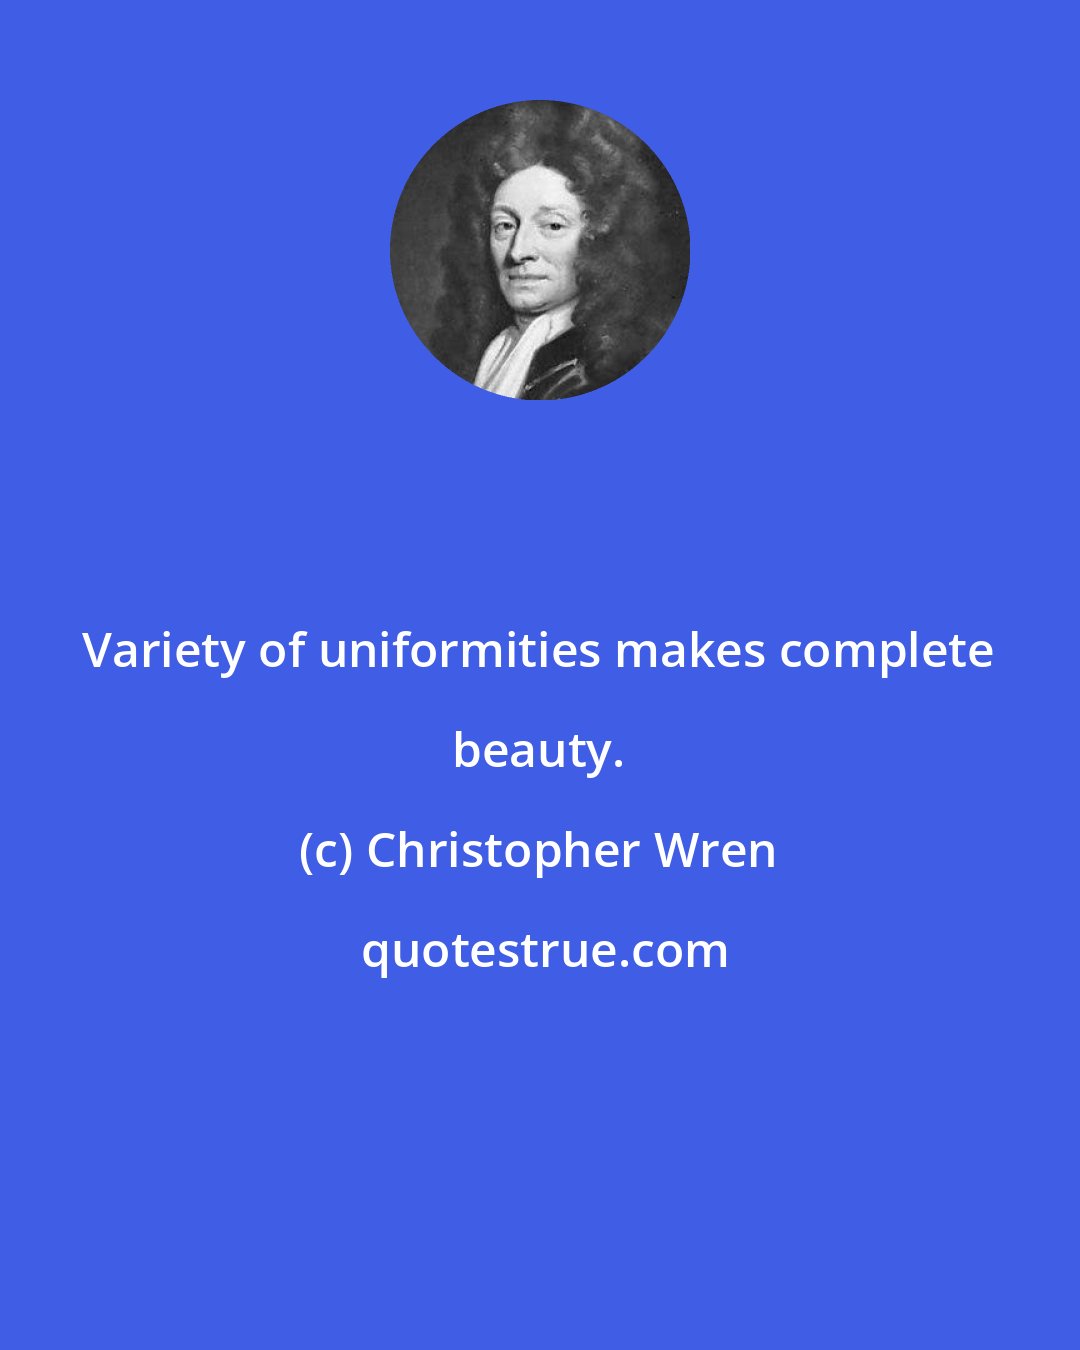 Christopher Wren: Variety of uniformities makes complete beauty.